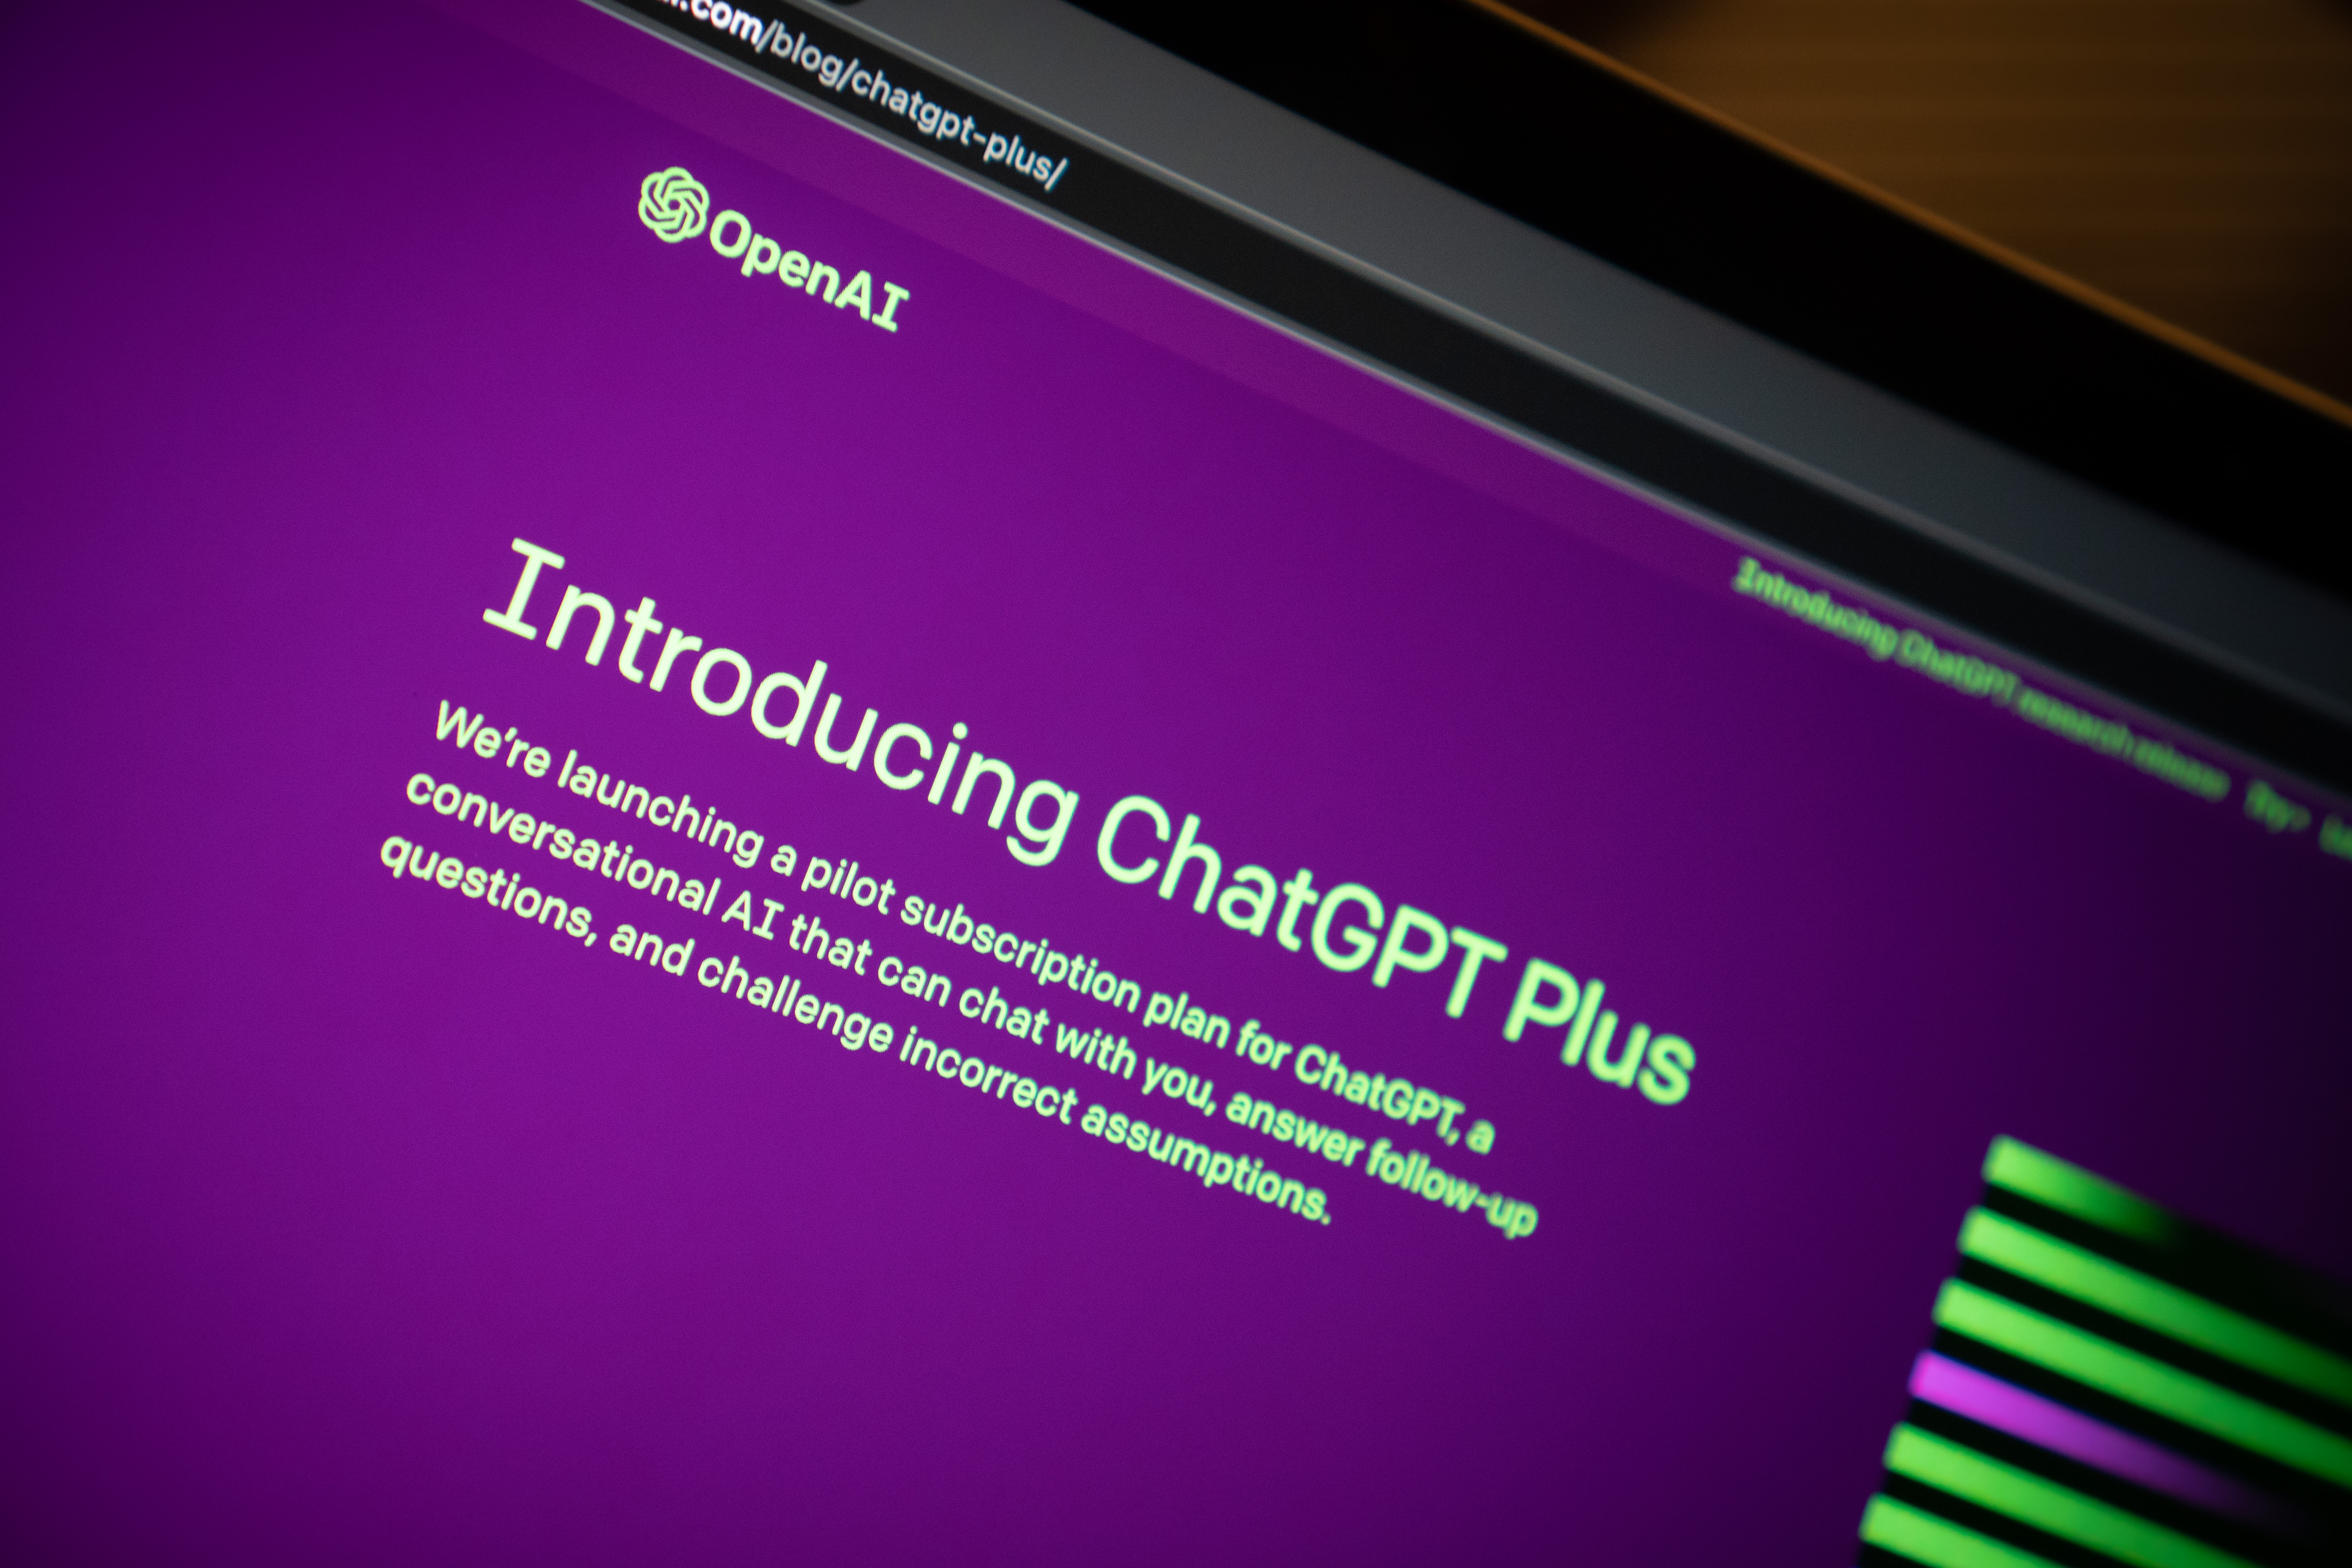 Les abonnés de ChatGPT Plus ont désormais la possibilité de télécharger et de travailler avec des fichiers